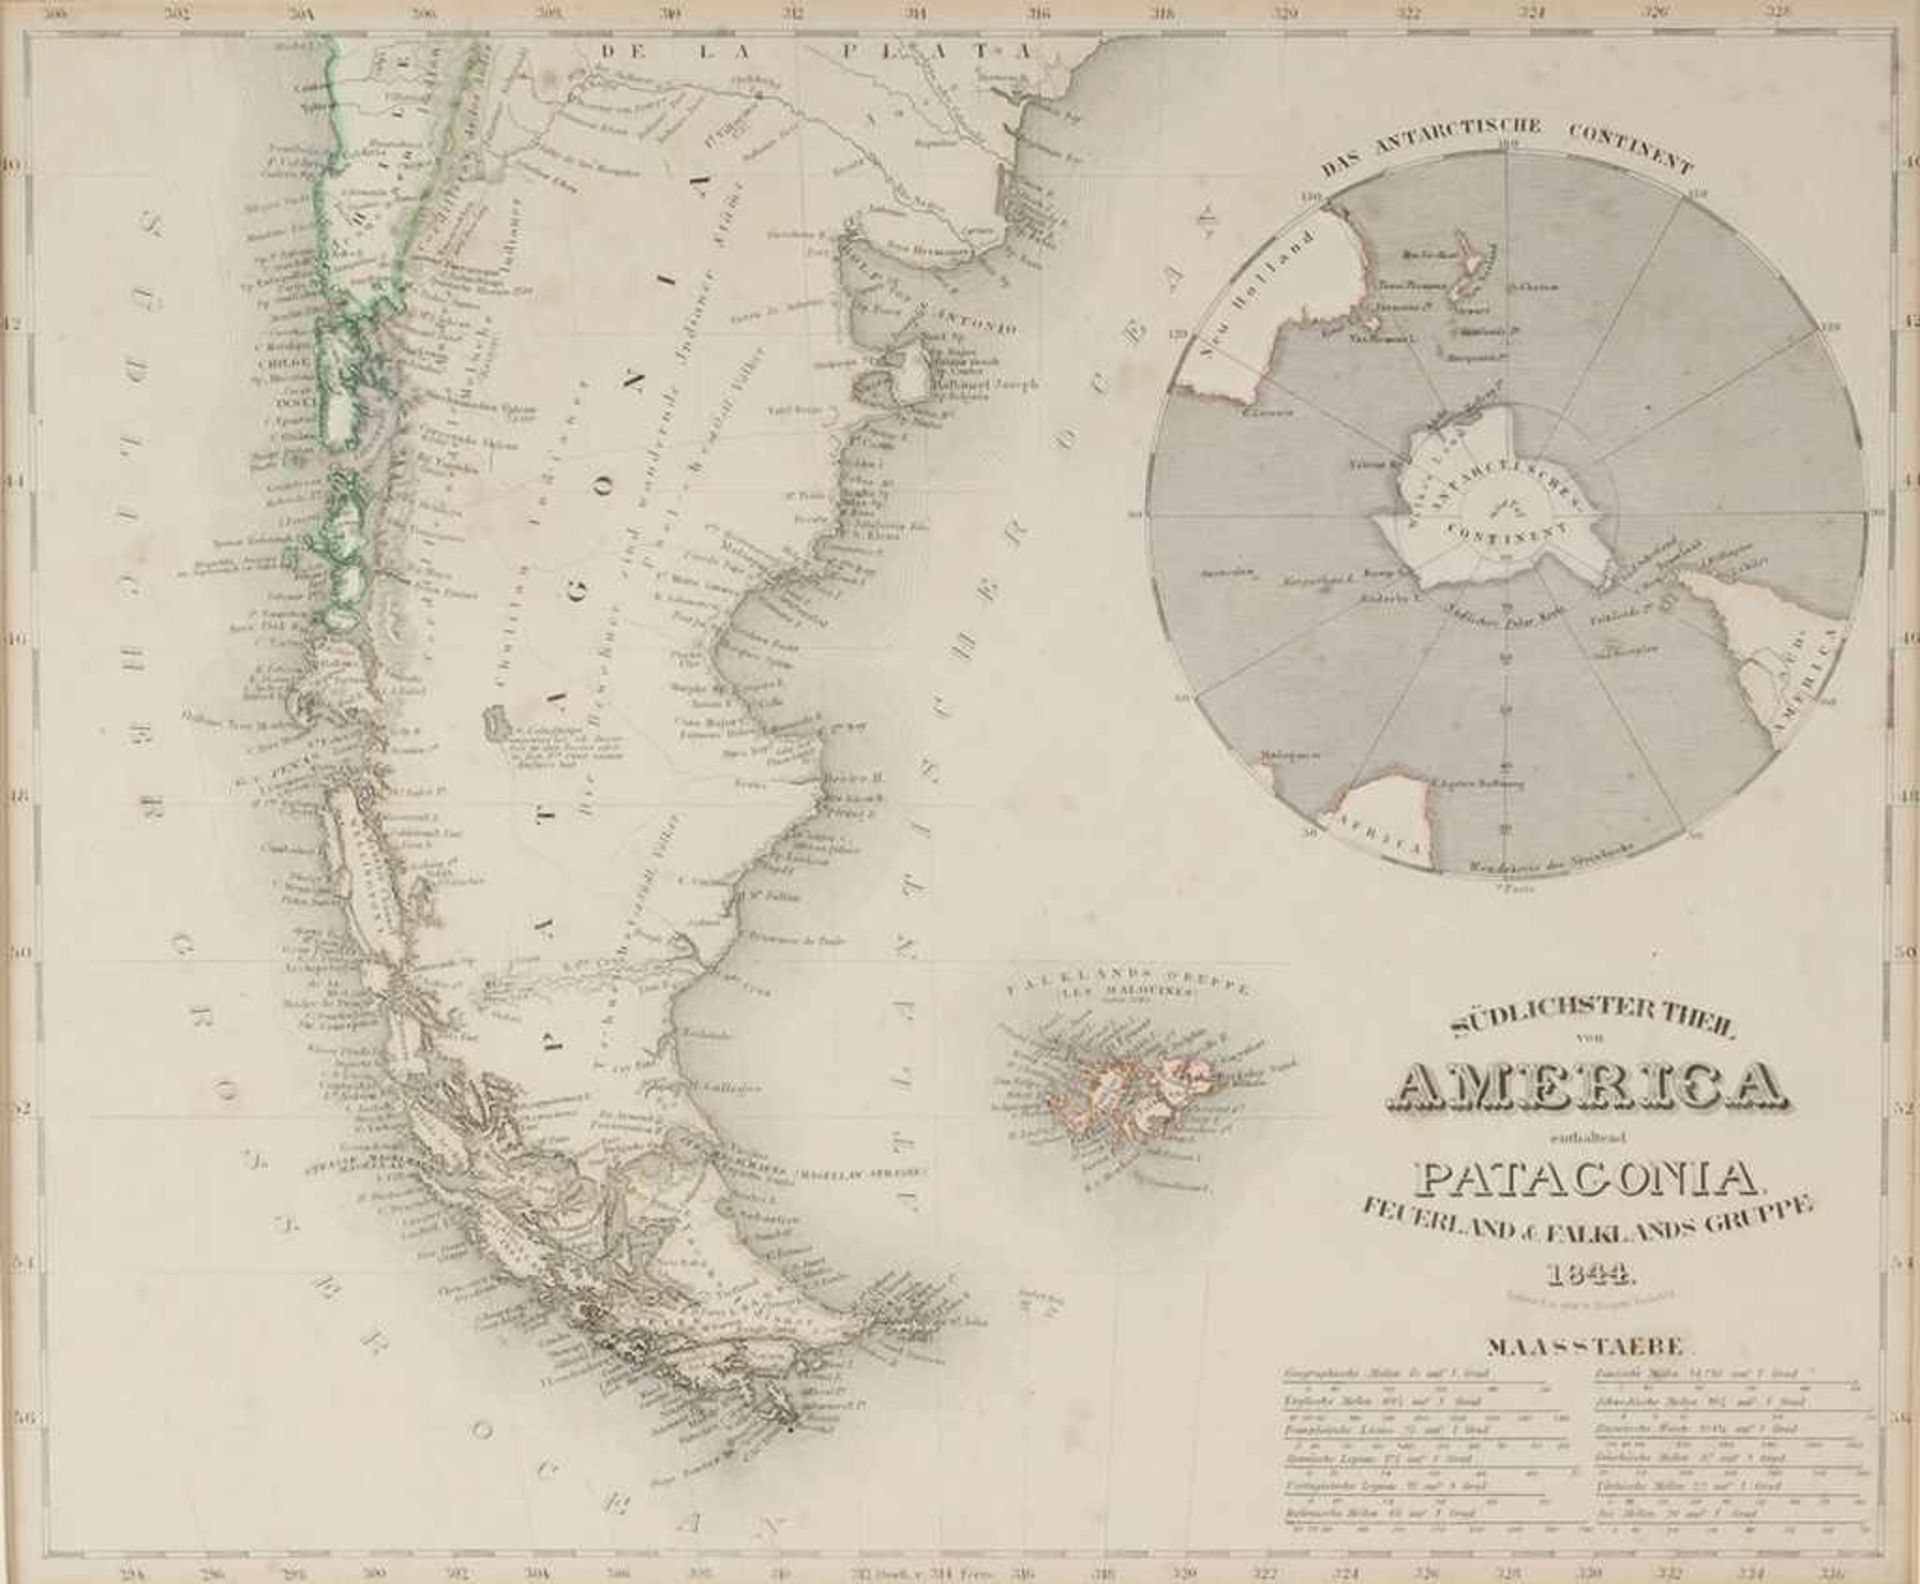 Karte PatagonienStahlstich, part. grenzkoloriert. "Südlichster Theil von America enthaltend